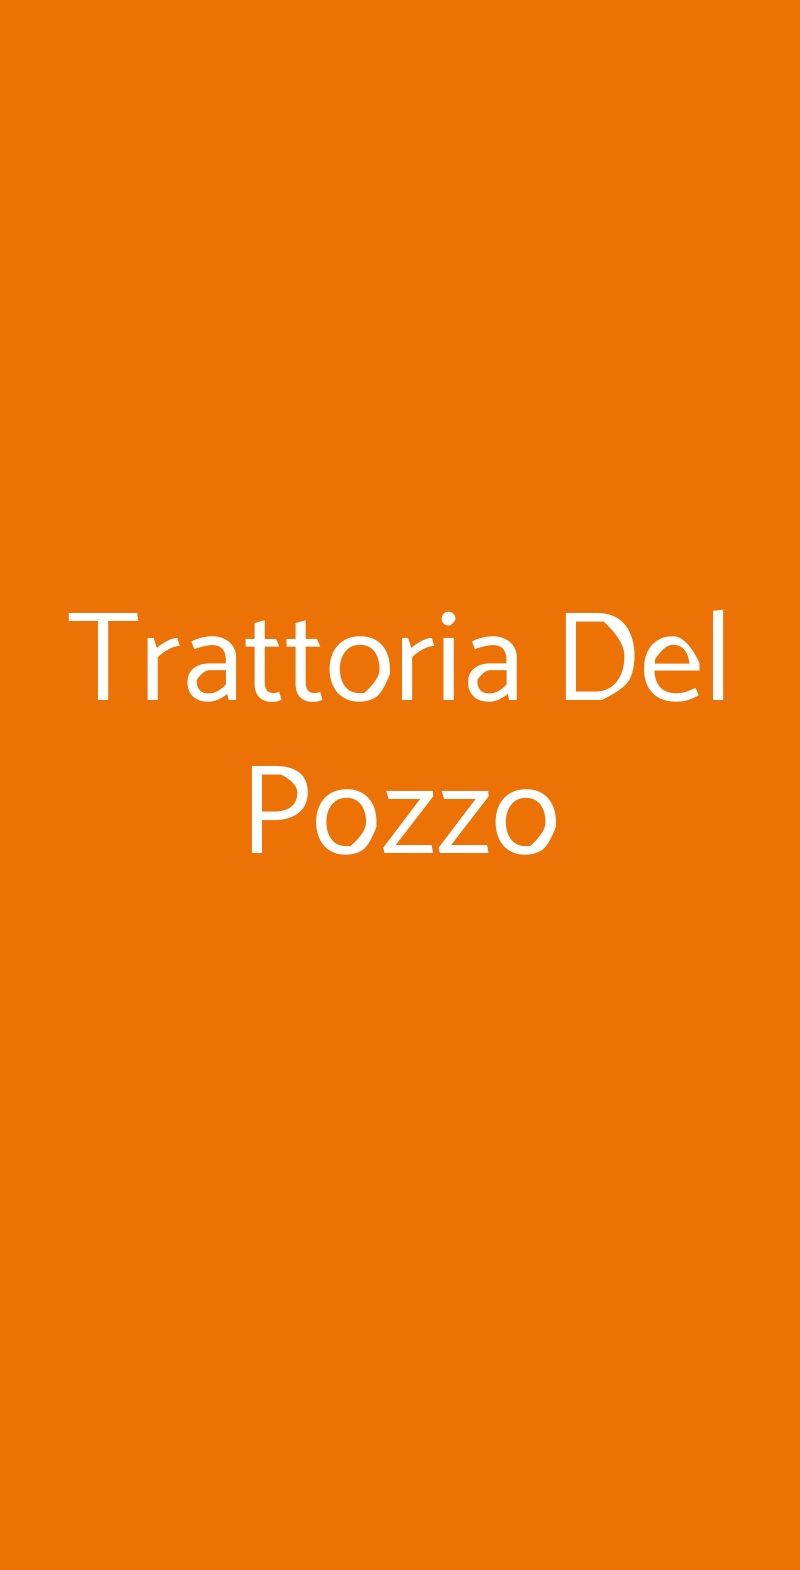 Trattoria Del Pozzo Cortiglione menù 1 pagina